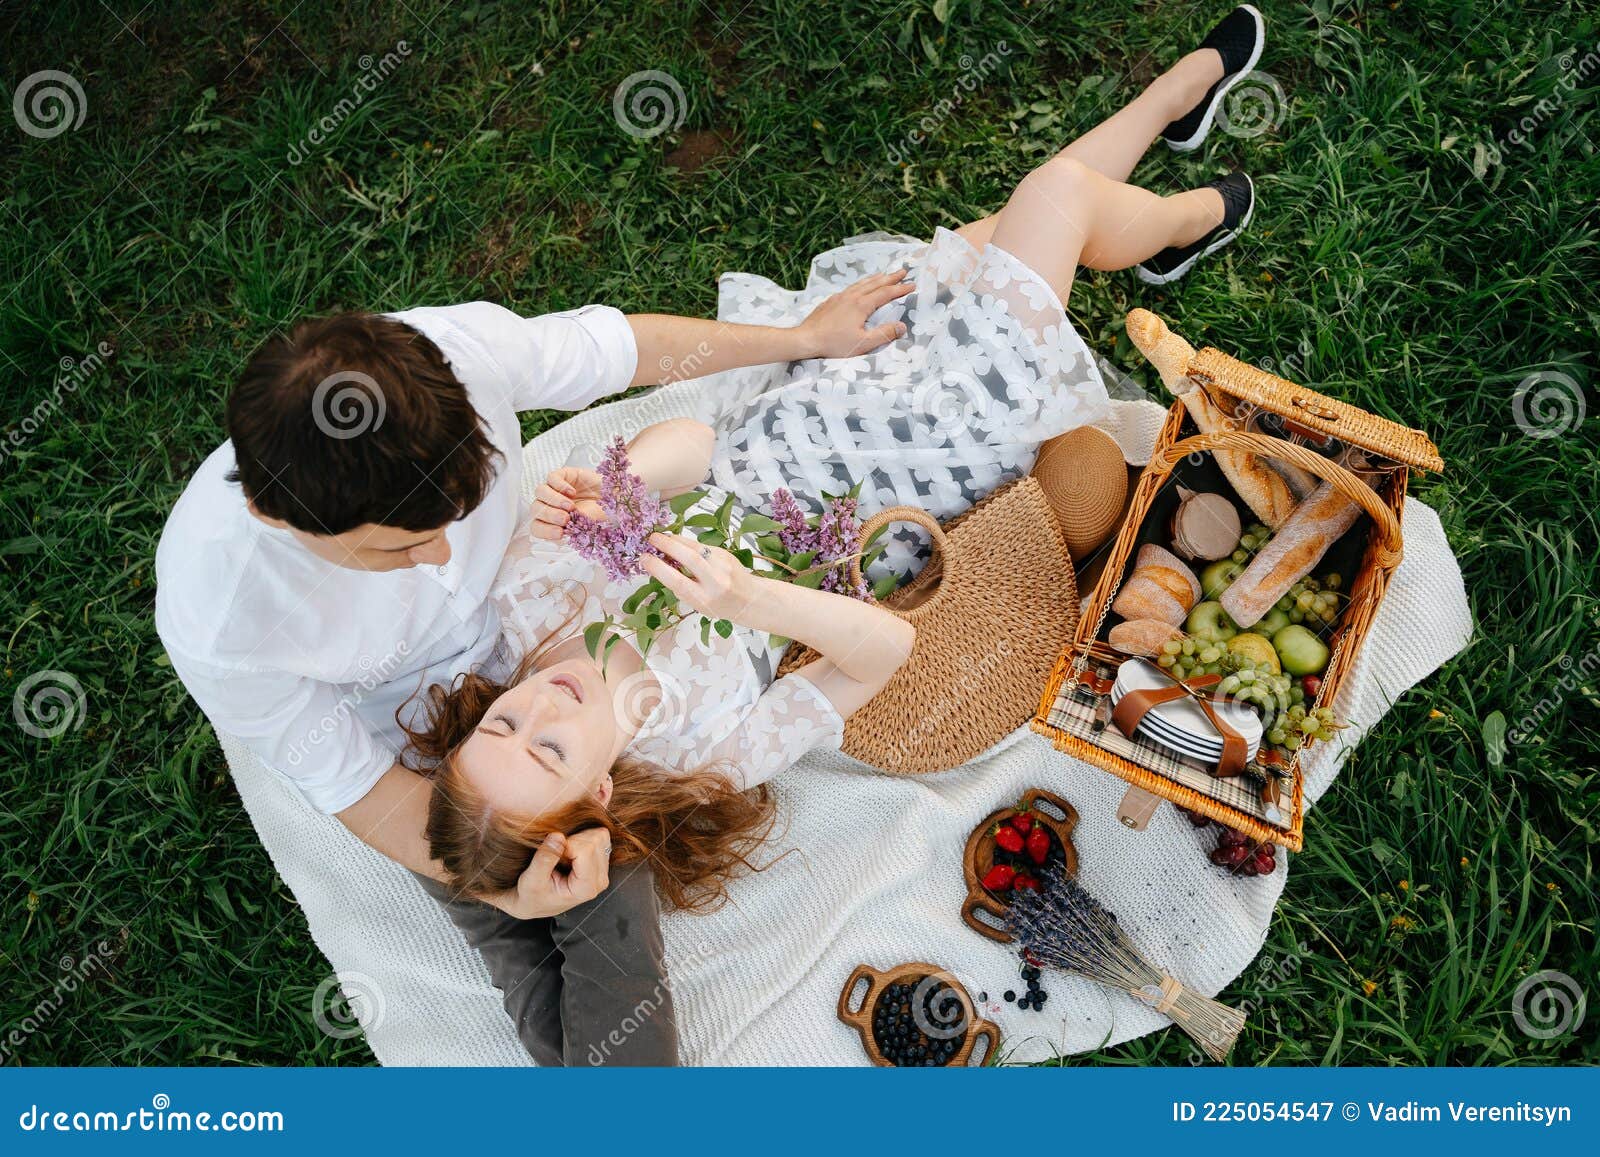 Русская семья на пикнике - 50 фото